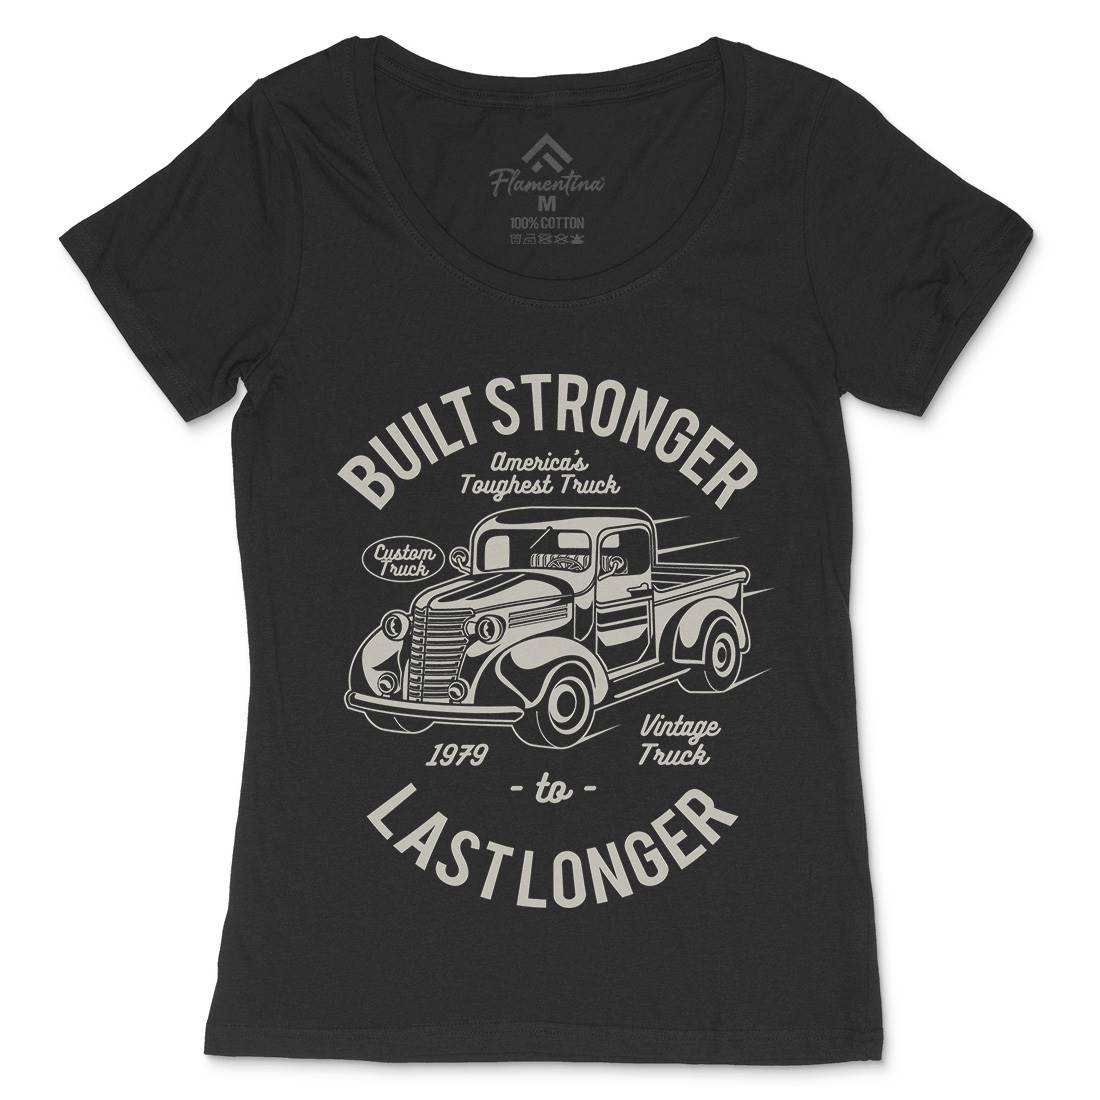 Built Stronger Womens Scoop Neck T-Shirt Cars A023